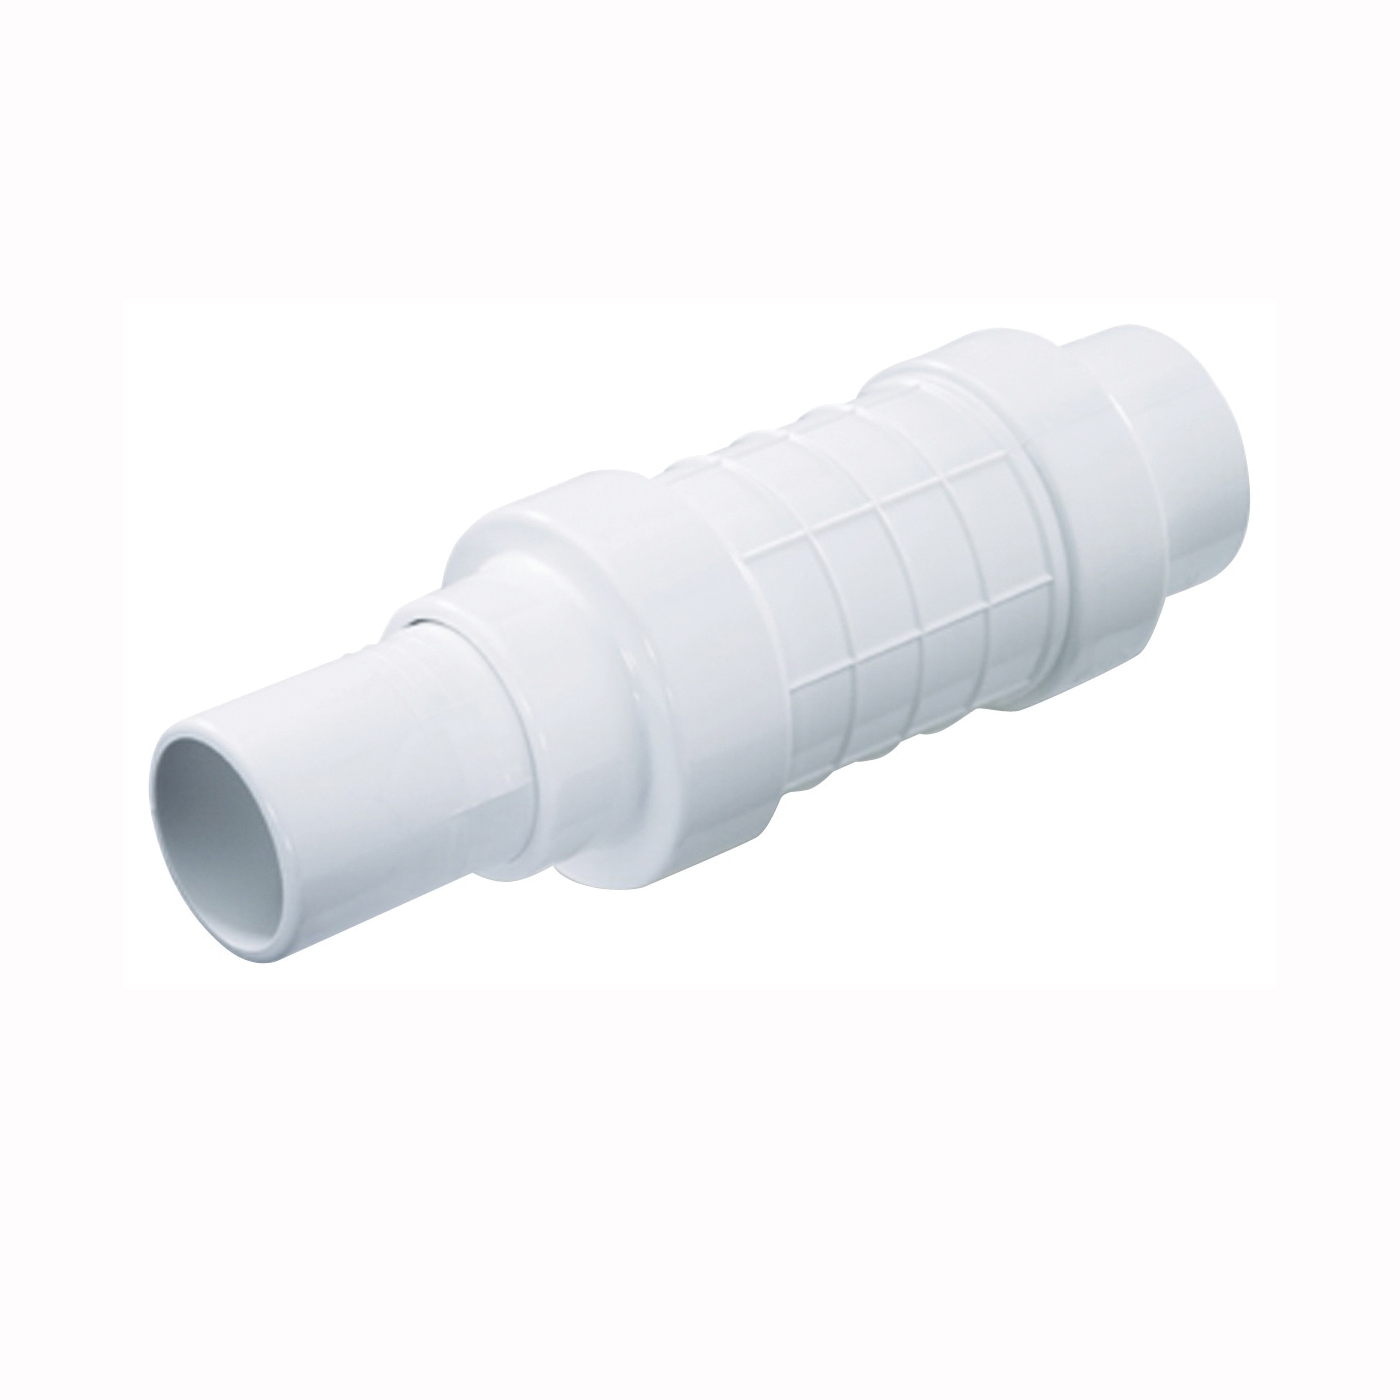 NDS Quik-Fix QF-1500 Pipe Repair Coupling, 1-1/2 in, Socket x Spigot, White, SCH 40 Schedule, 150 psi Pressure